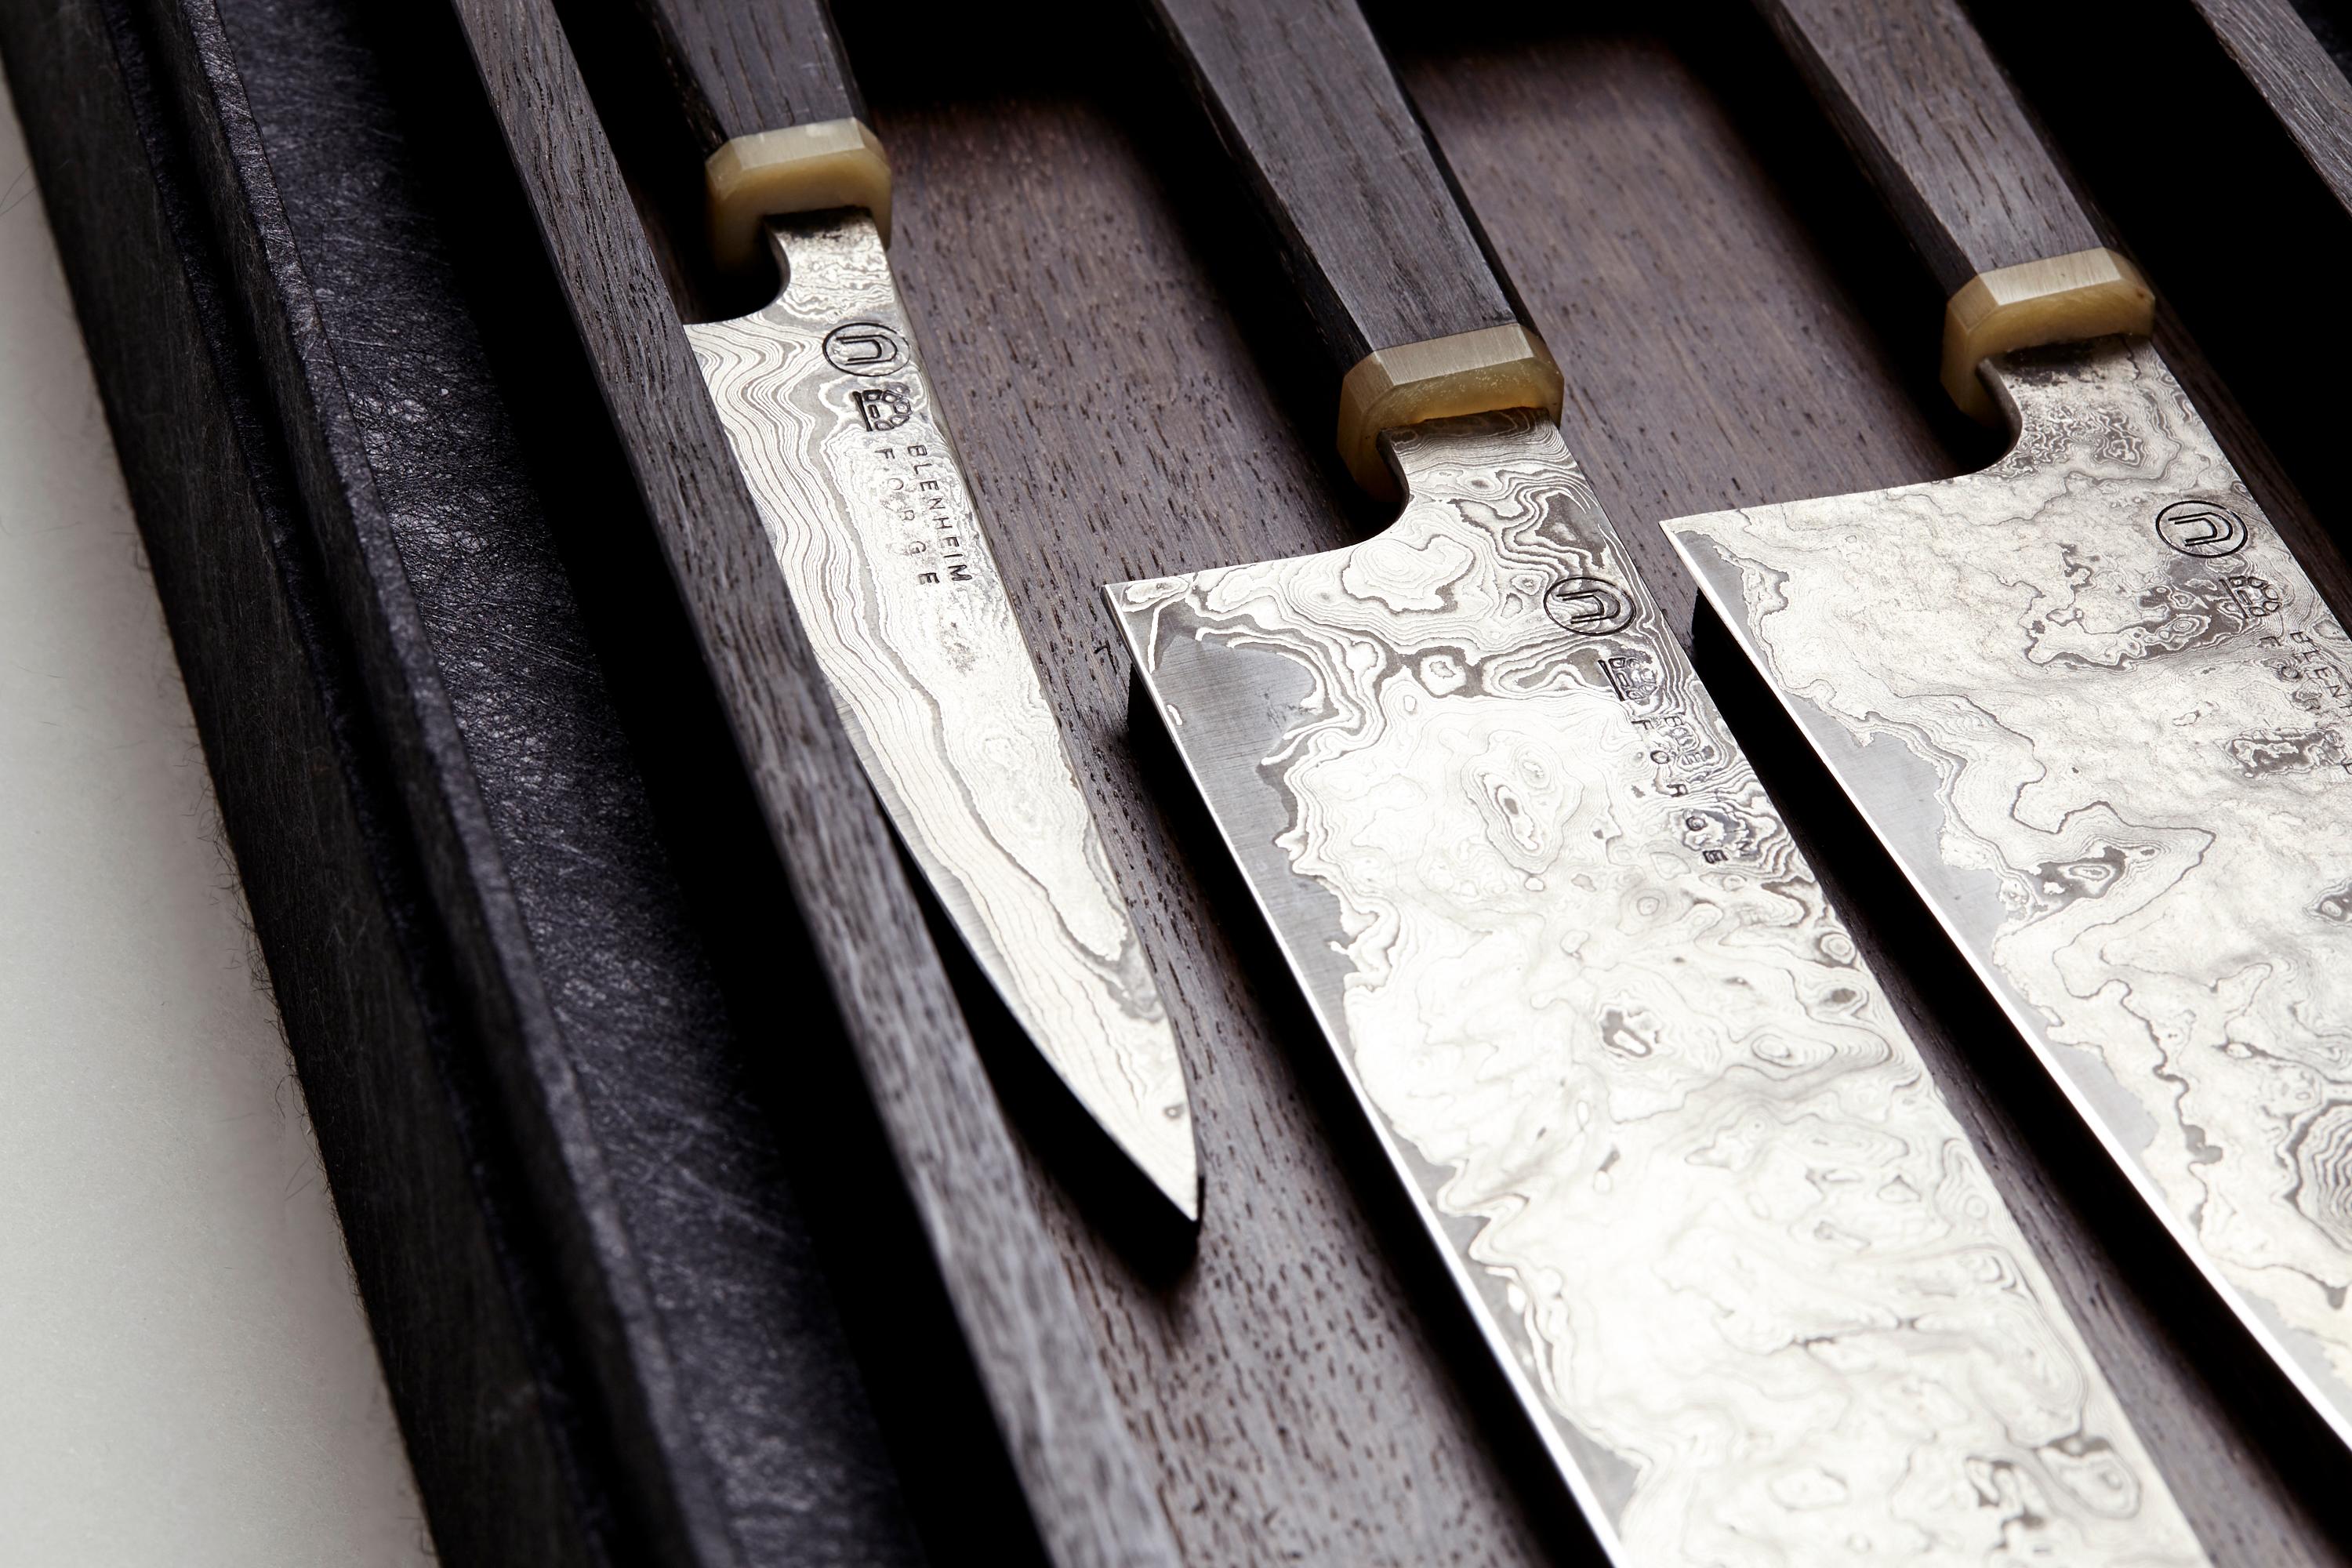 Le premier projet de DOVEDALE est un ensemble de couteaux en acier damassé d'inspiration japonaise. Les lames d'acier en papier bleu plié sont placées dans des manches en bois et disposées dans un coffret de présentation, tous deux fabriqués en